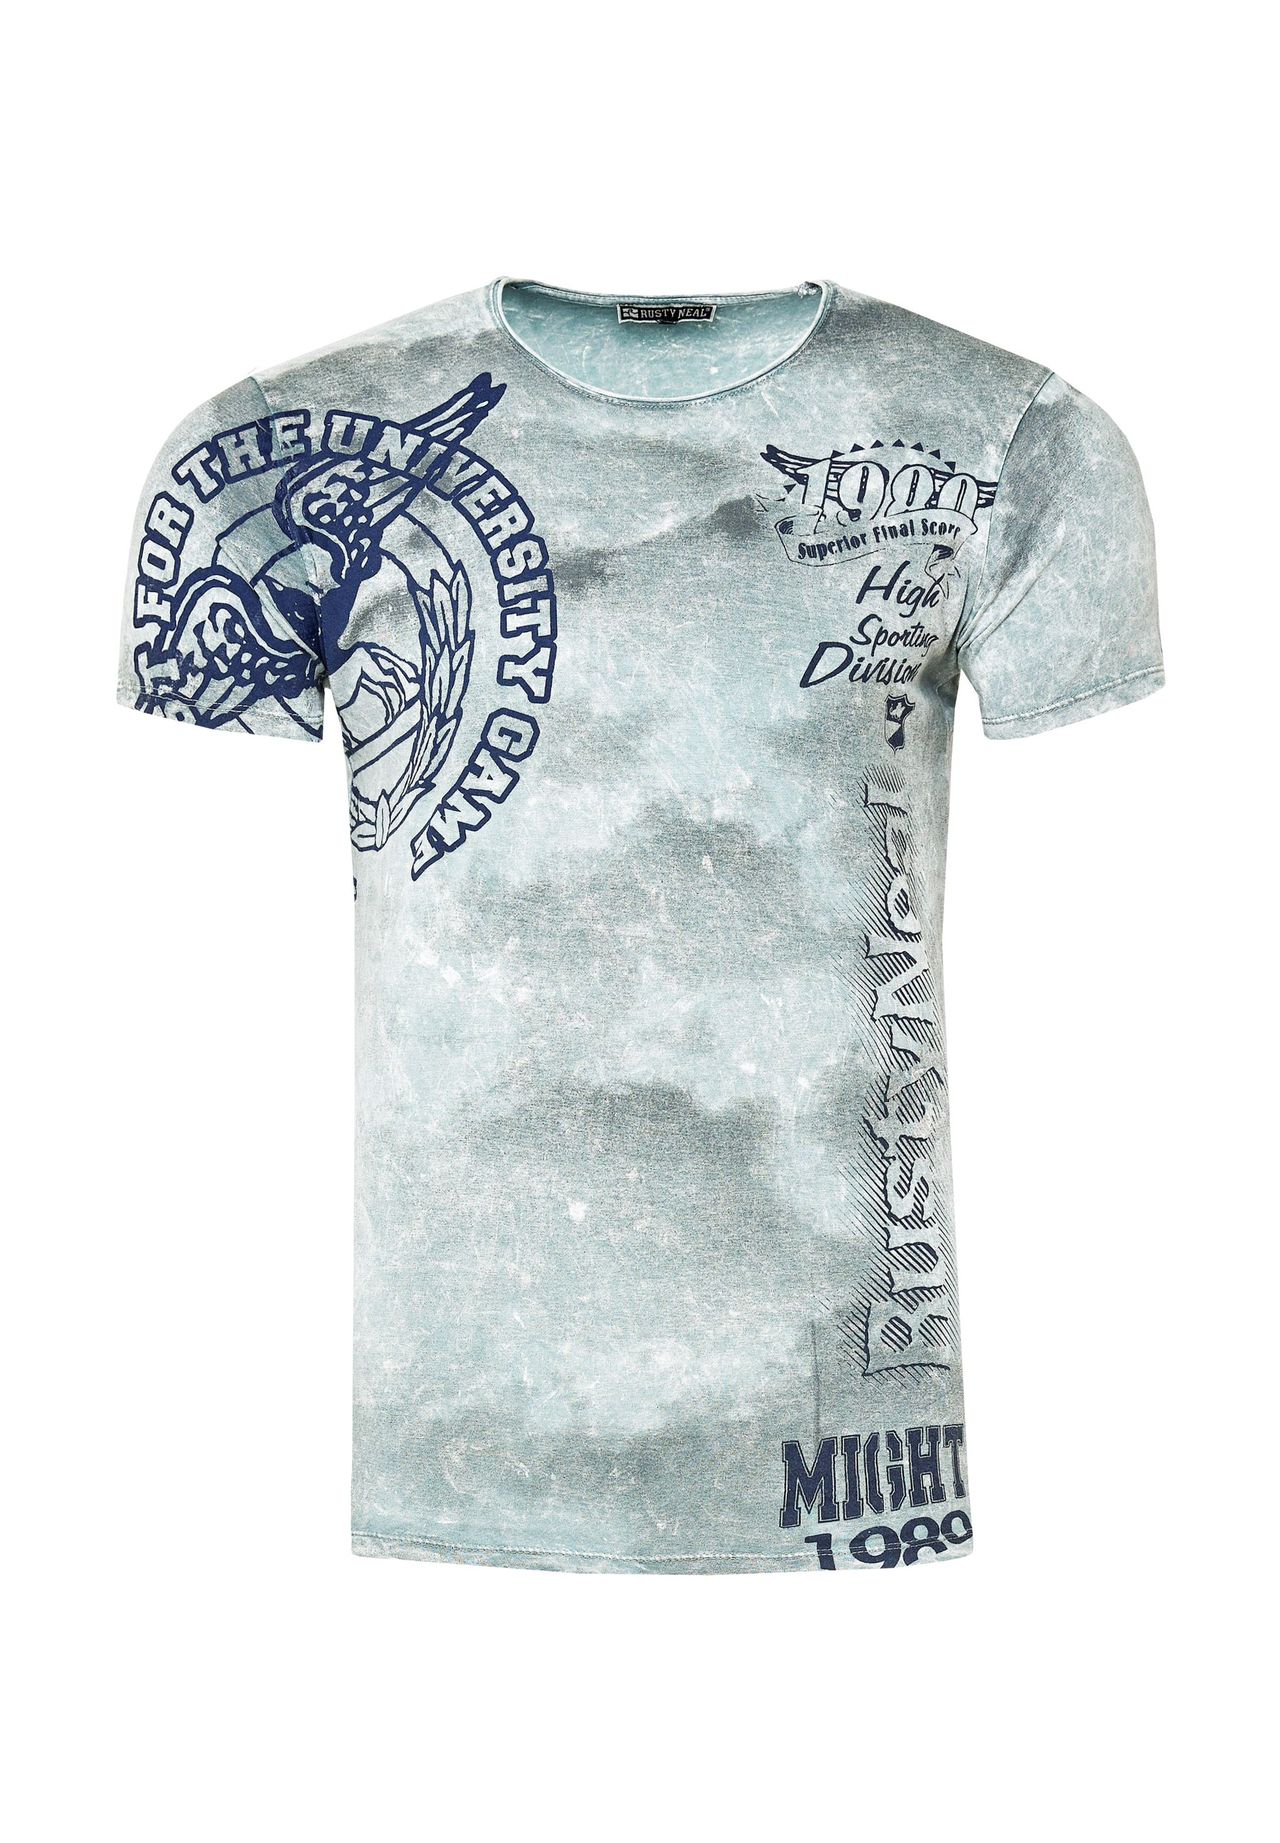 T-Shirt RUSTY | NEAL® Print mit eindrucksvollem GALERIA